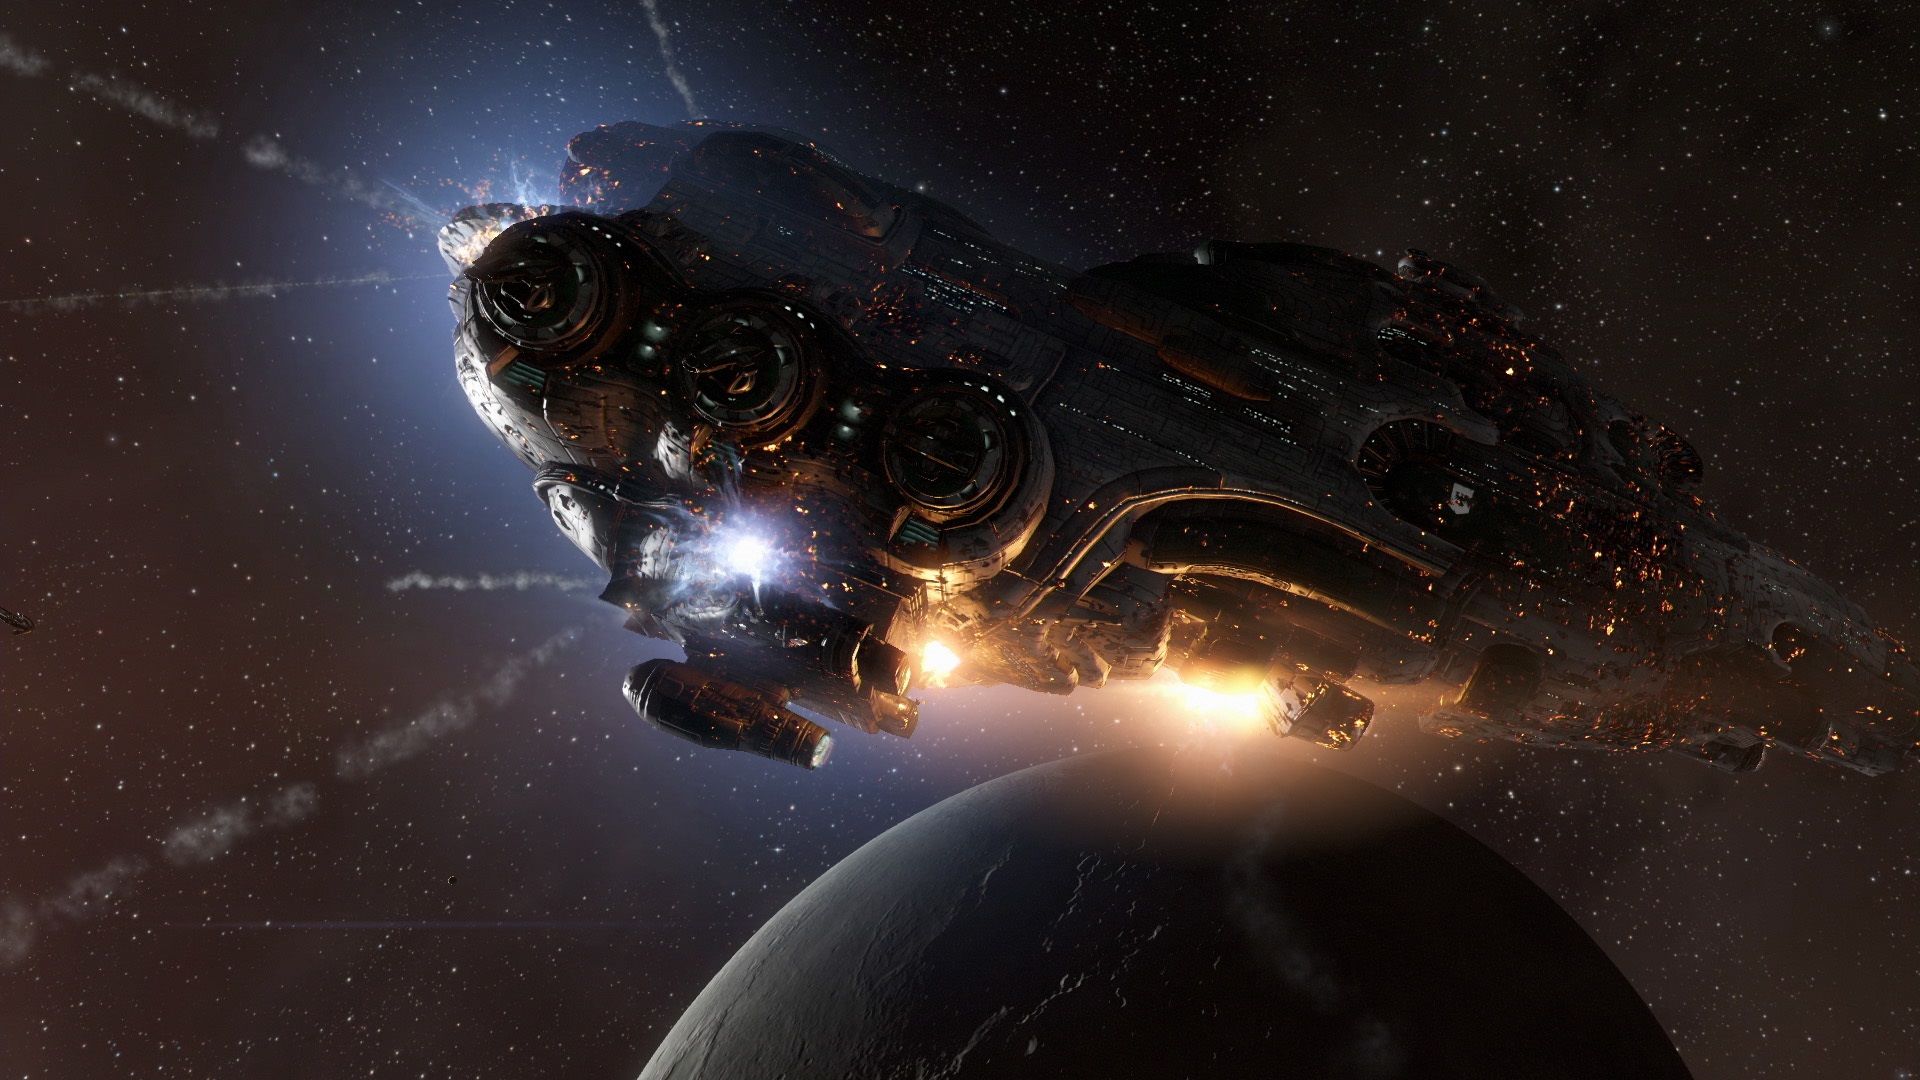 Los mejores juegos gratuitos para PC: EVE Online. La imagen muestra una enorme nave volando por el espacio.